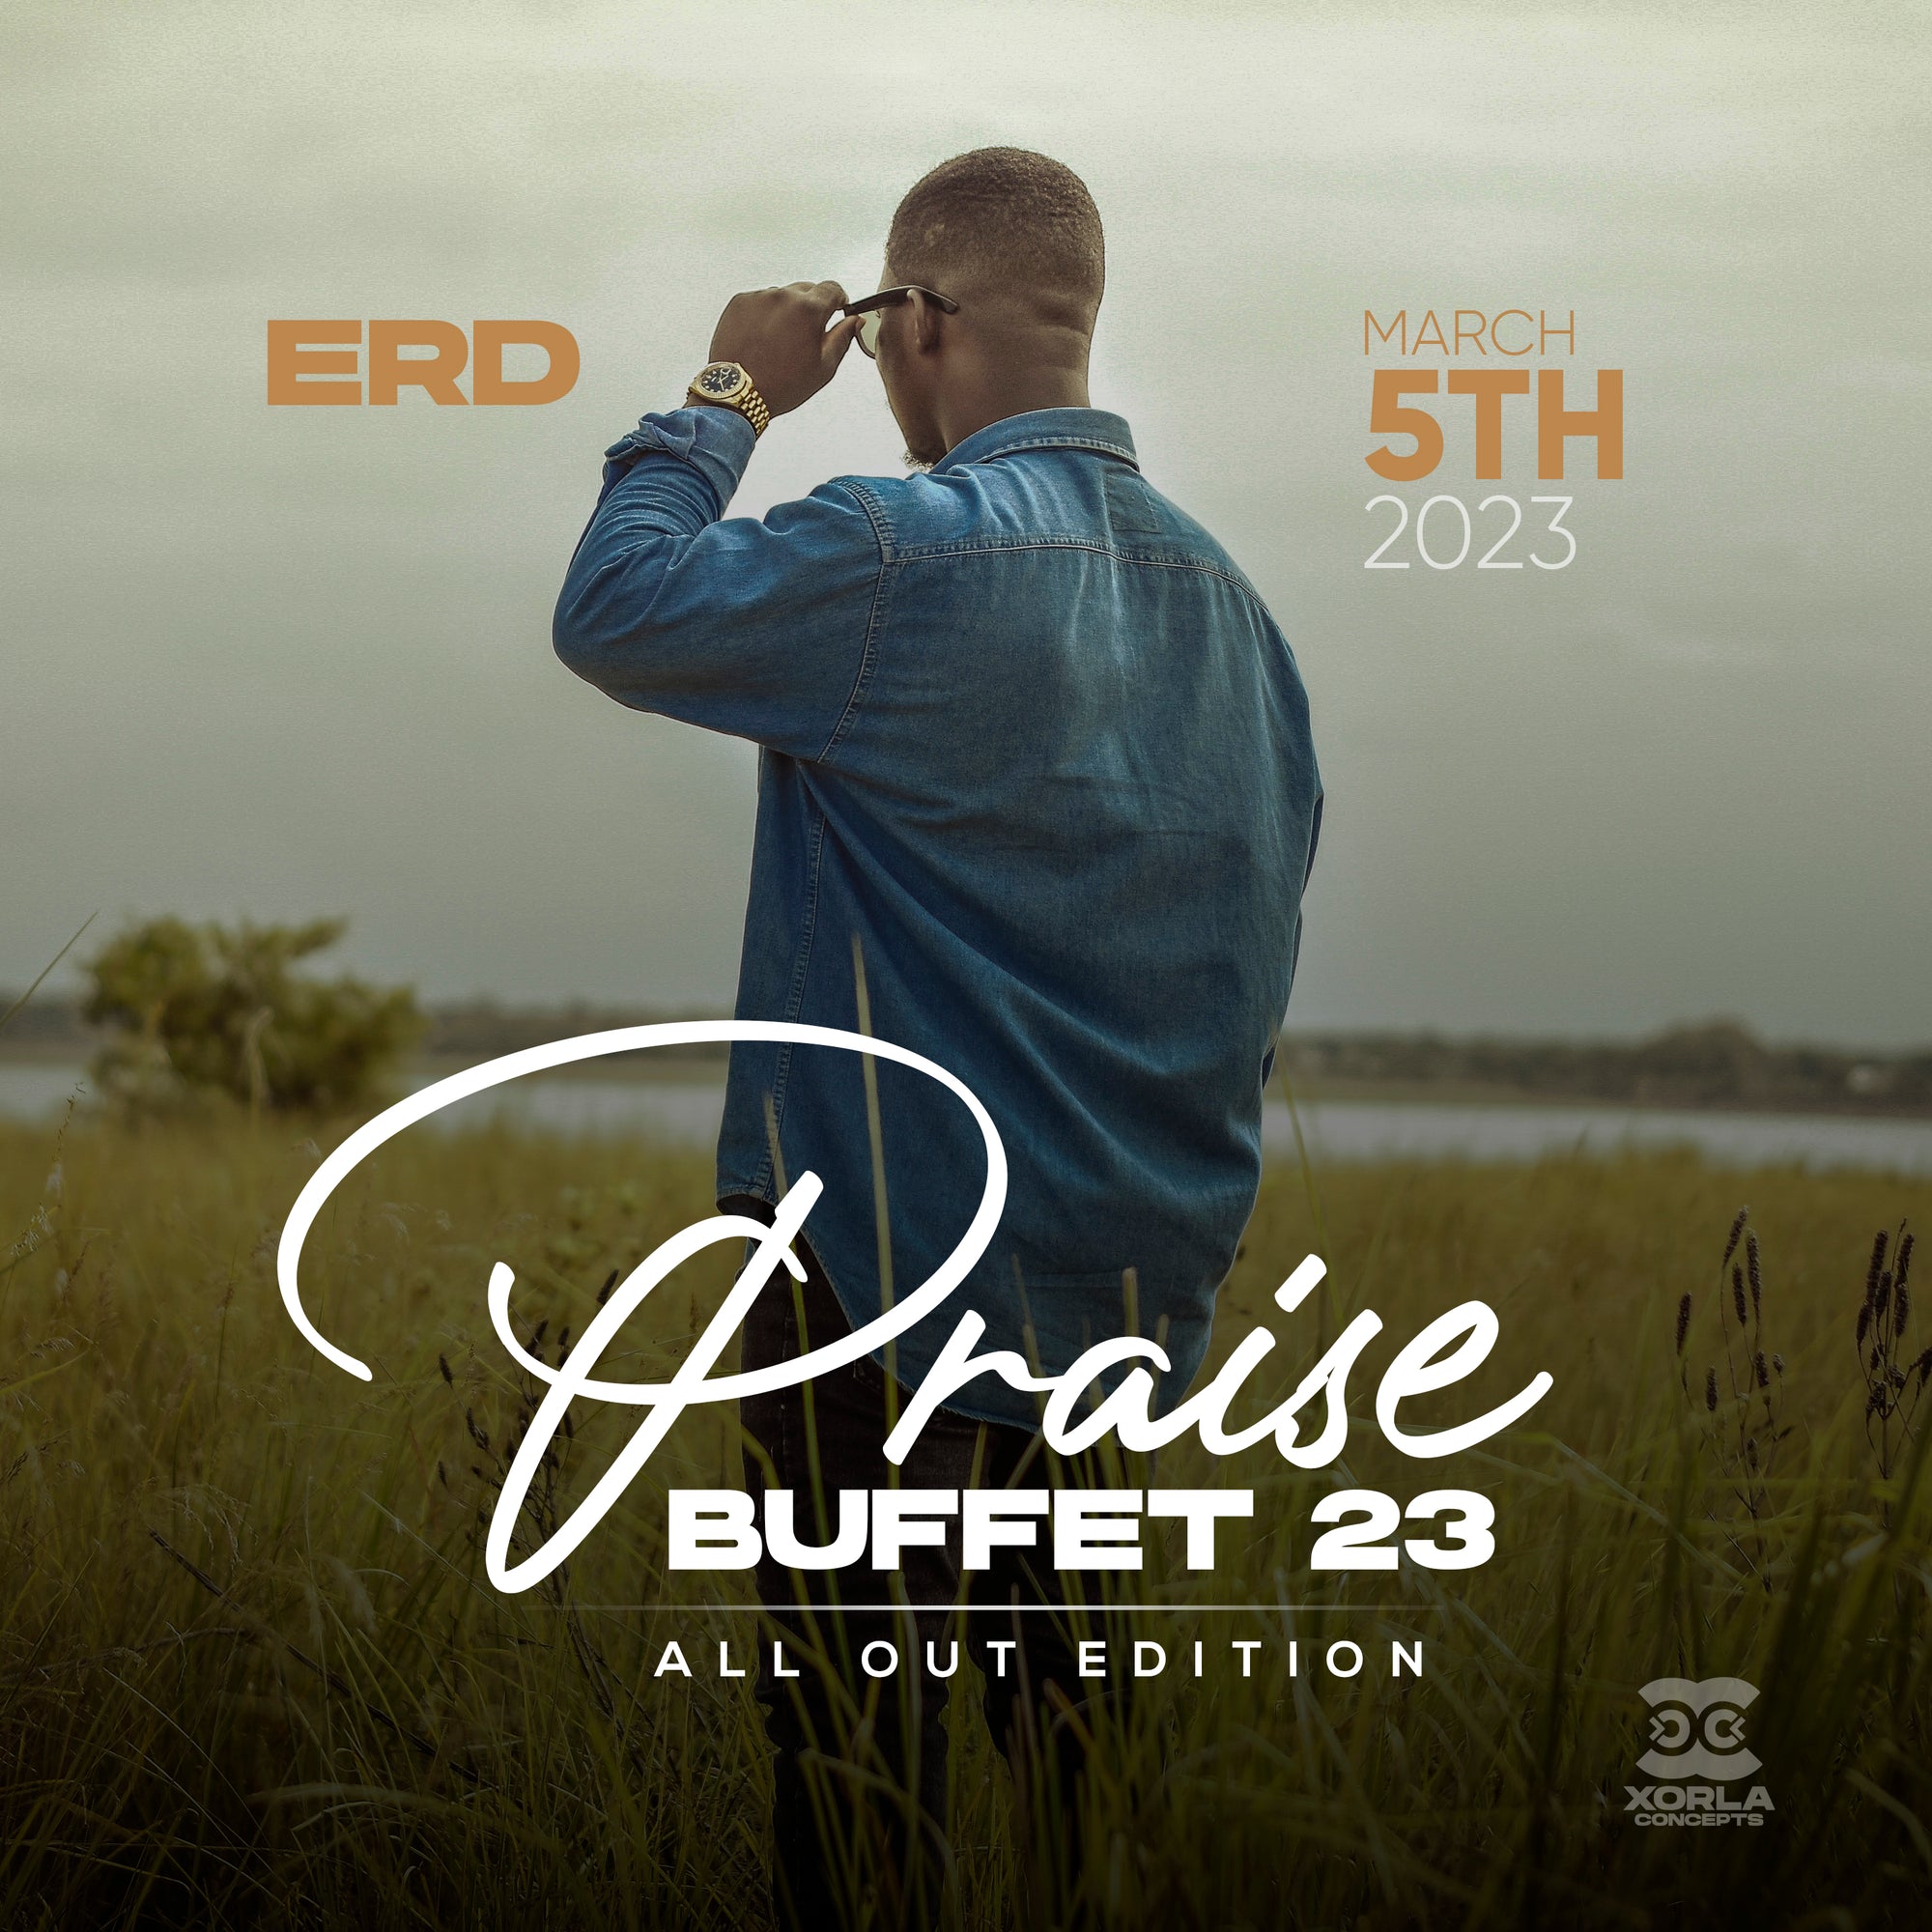 Erd Muzic at Praise Buffet ‘23